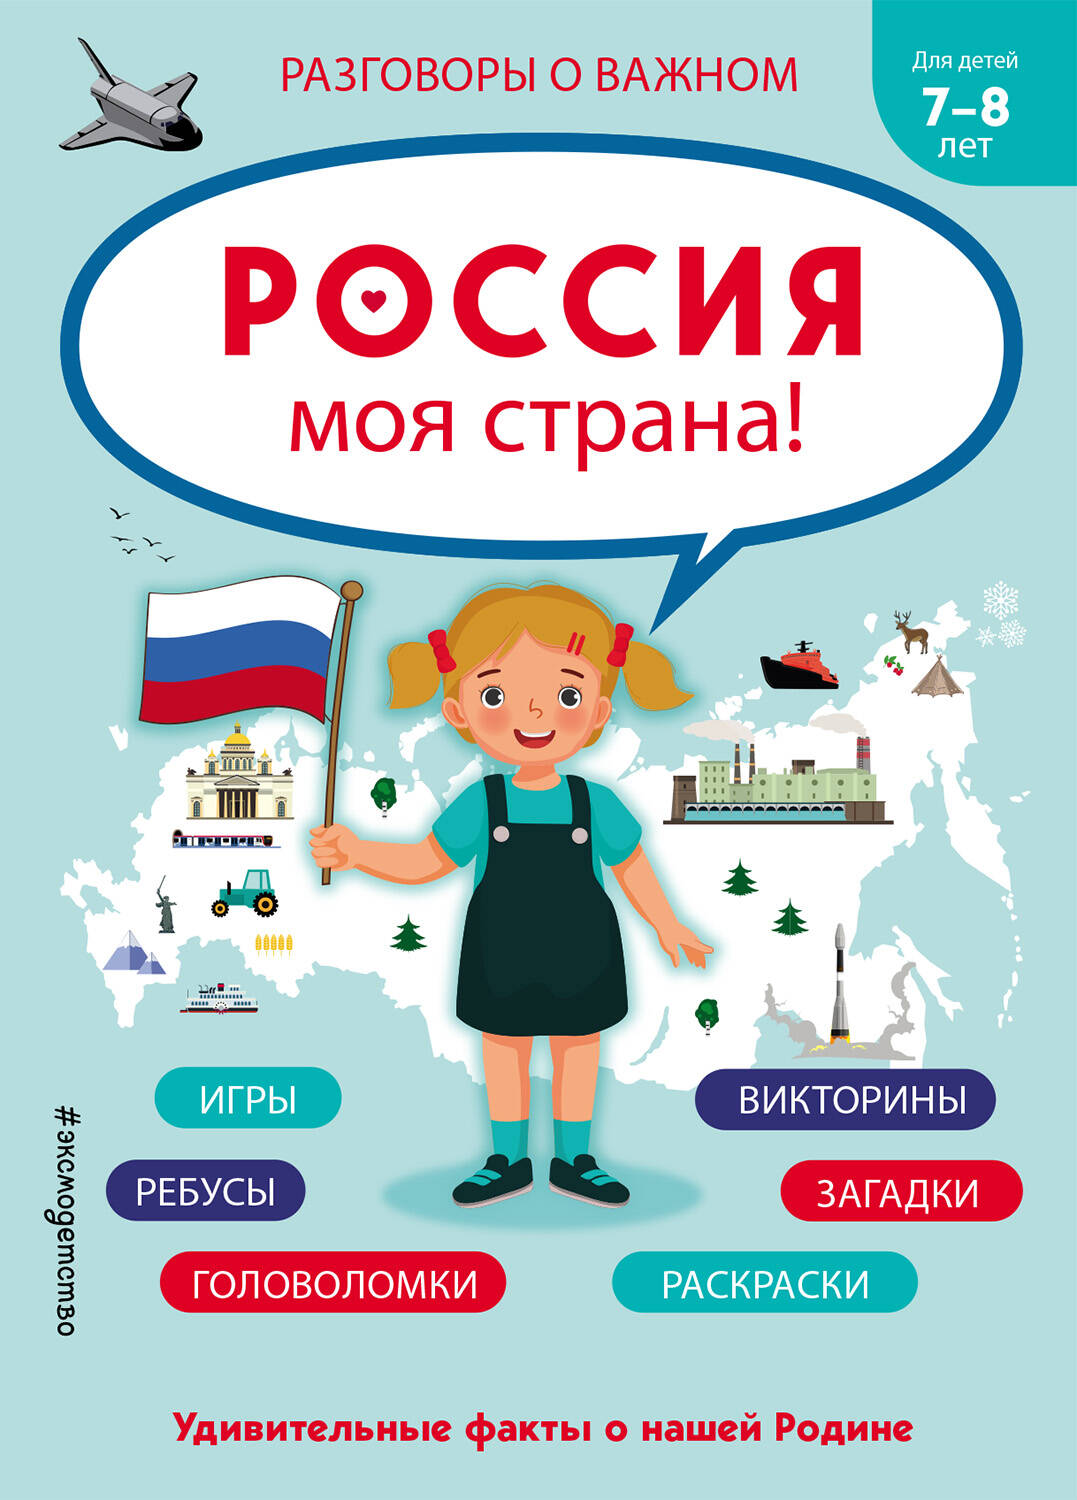 Россия - моя страна!